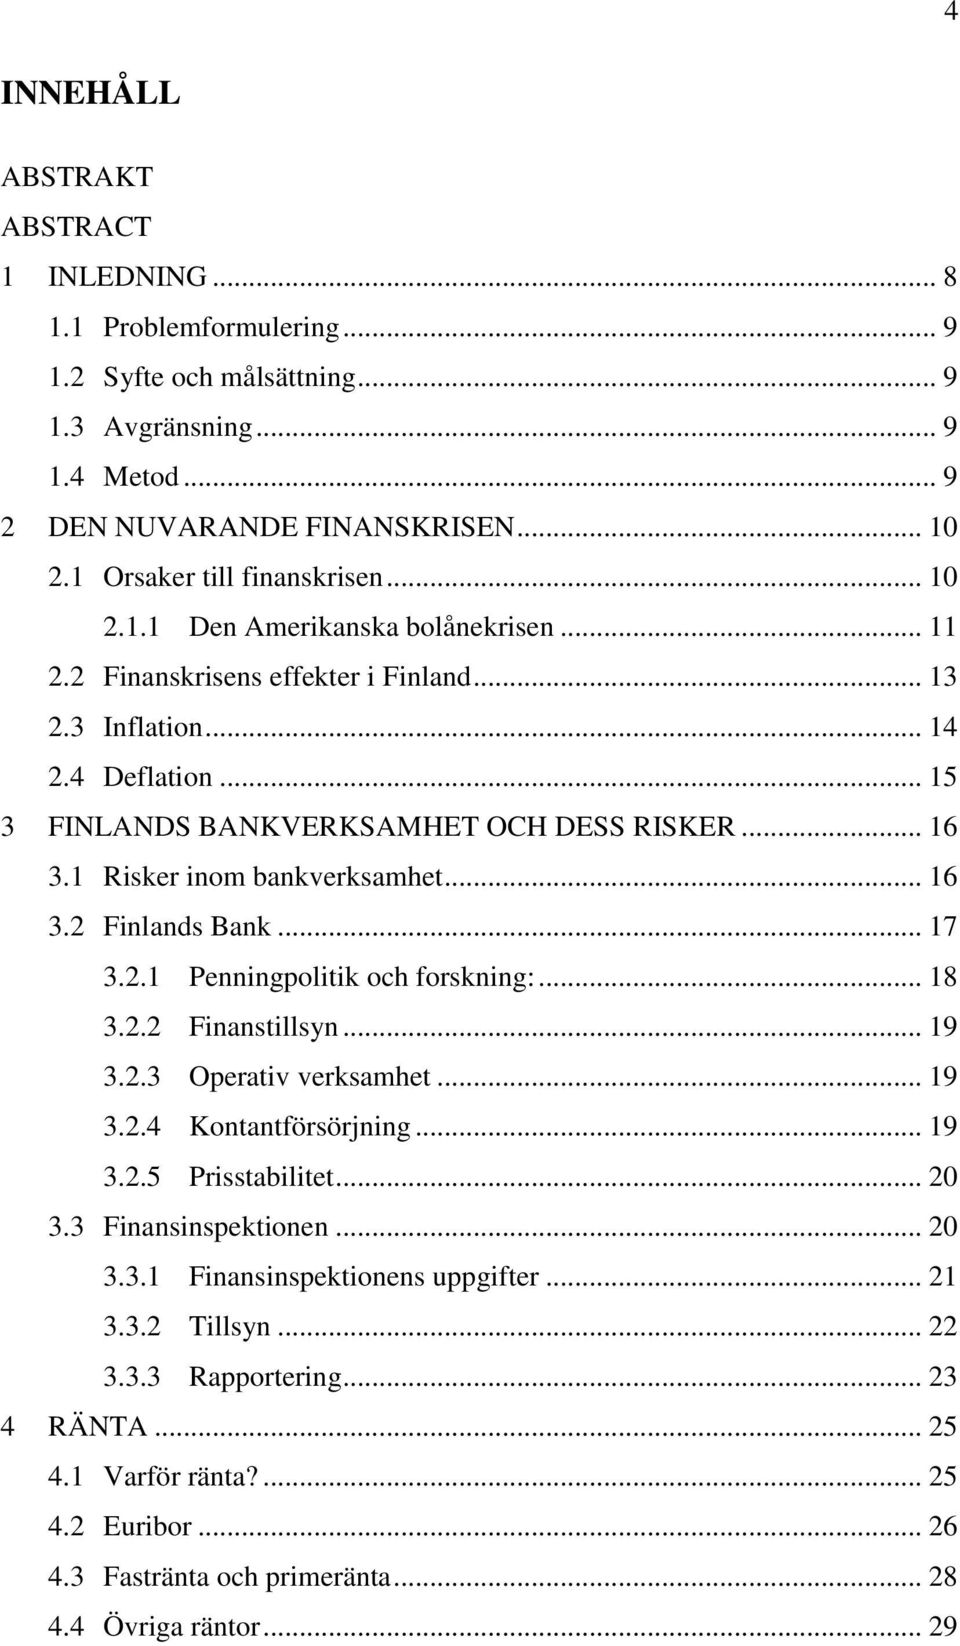 .. 16 3.1 Risker inom bankverksamhet... 16 3.2 Finlands Bank... 17 3.2.1 Penningpolitik och forskning:... 18 3.2.2 Finanstillsyn... 19 3.2.3 Operativ verksamhet... 19 3.2.4 Kontantförsörjning... 19 3.2.5 Prisstabilitet.